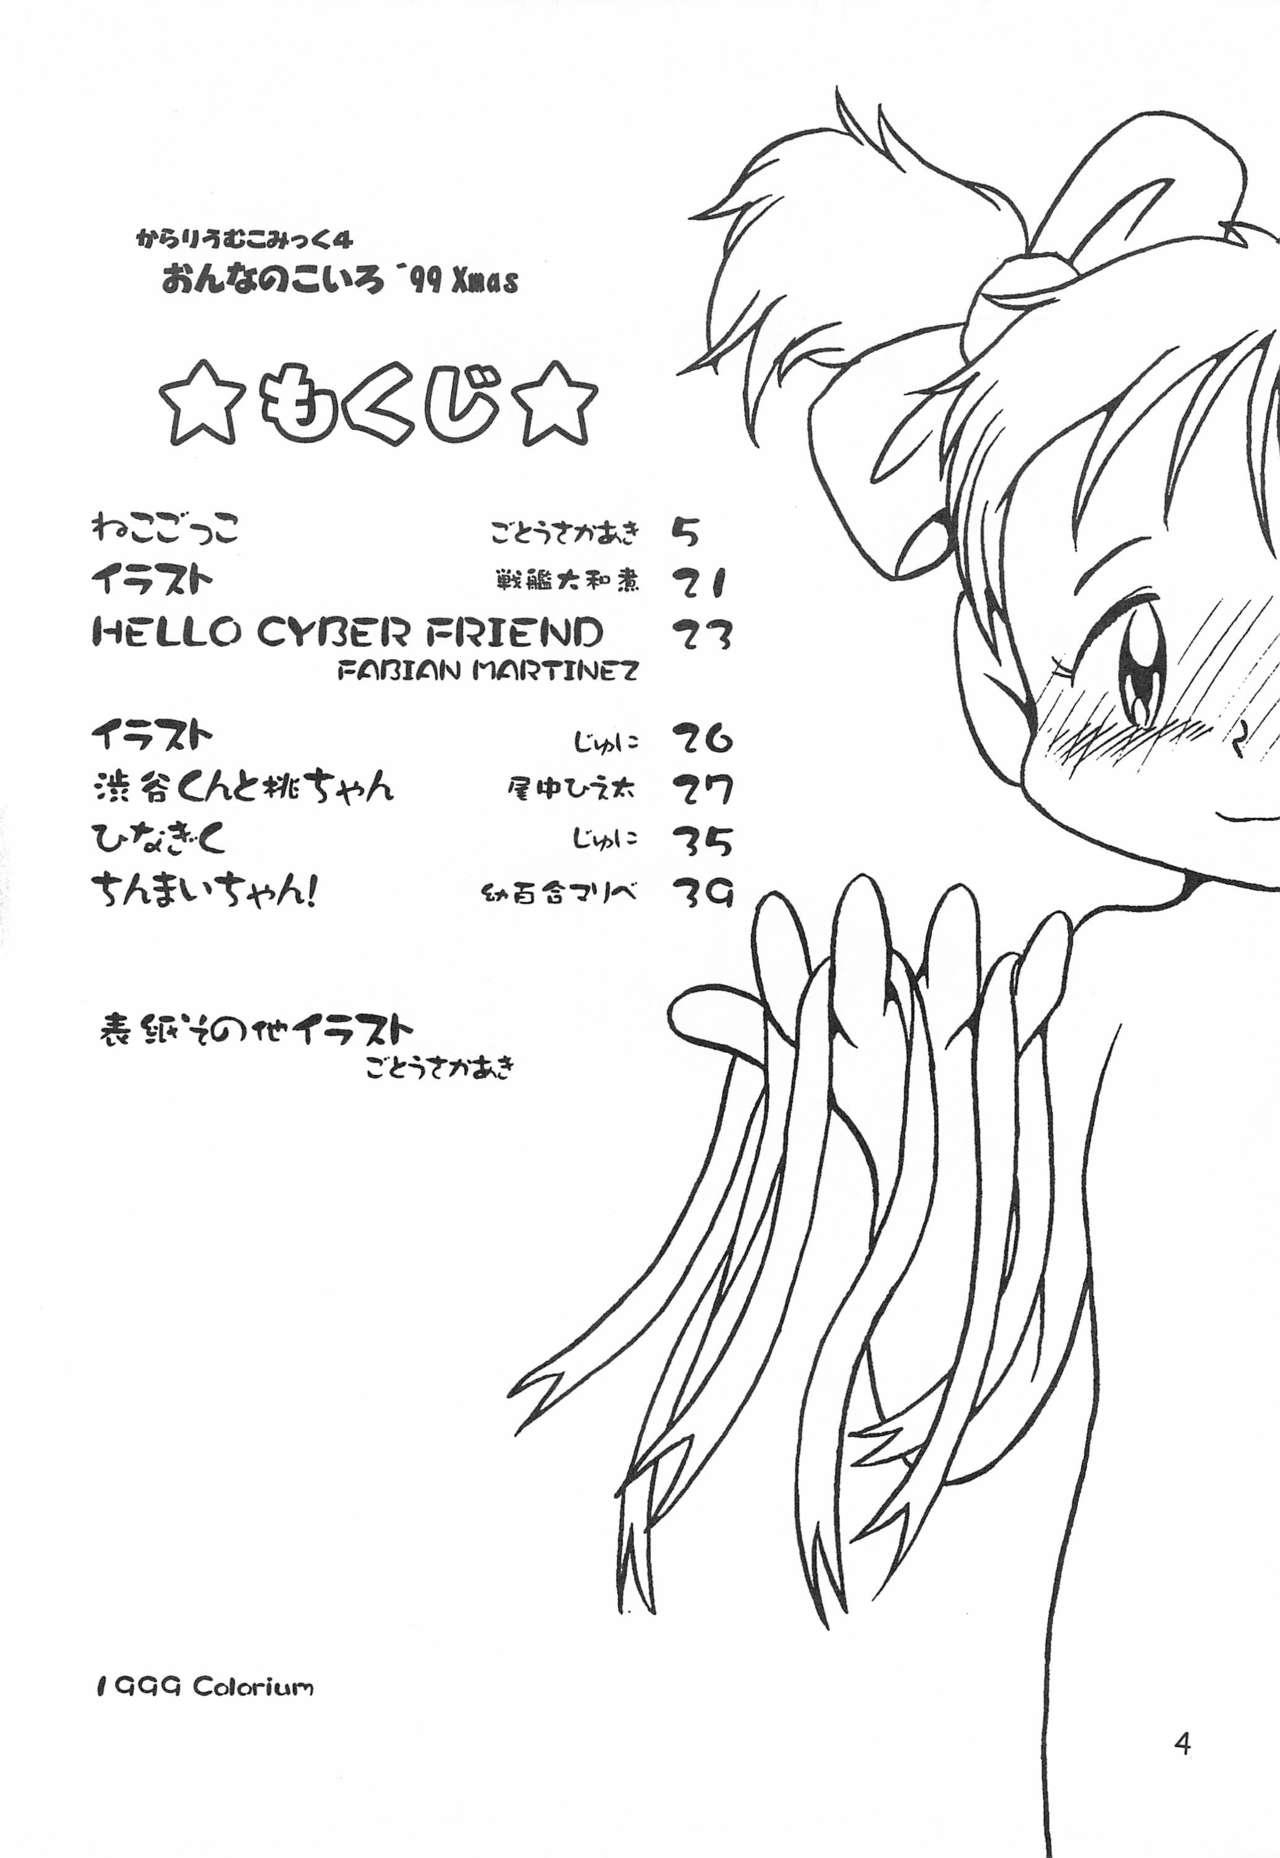 Tribbing Colorium Comic 4 Onna no ko Iro '99 Xmas - Original Masterbate - Page 6